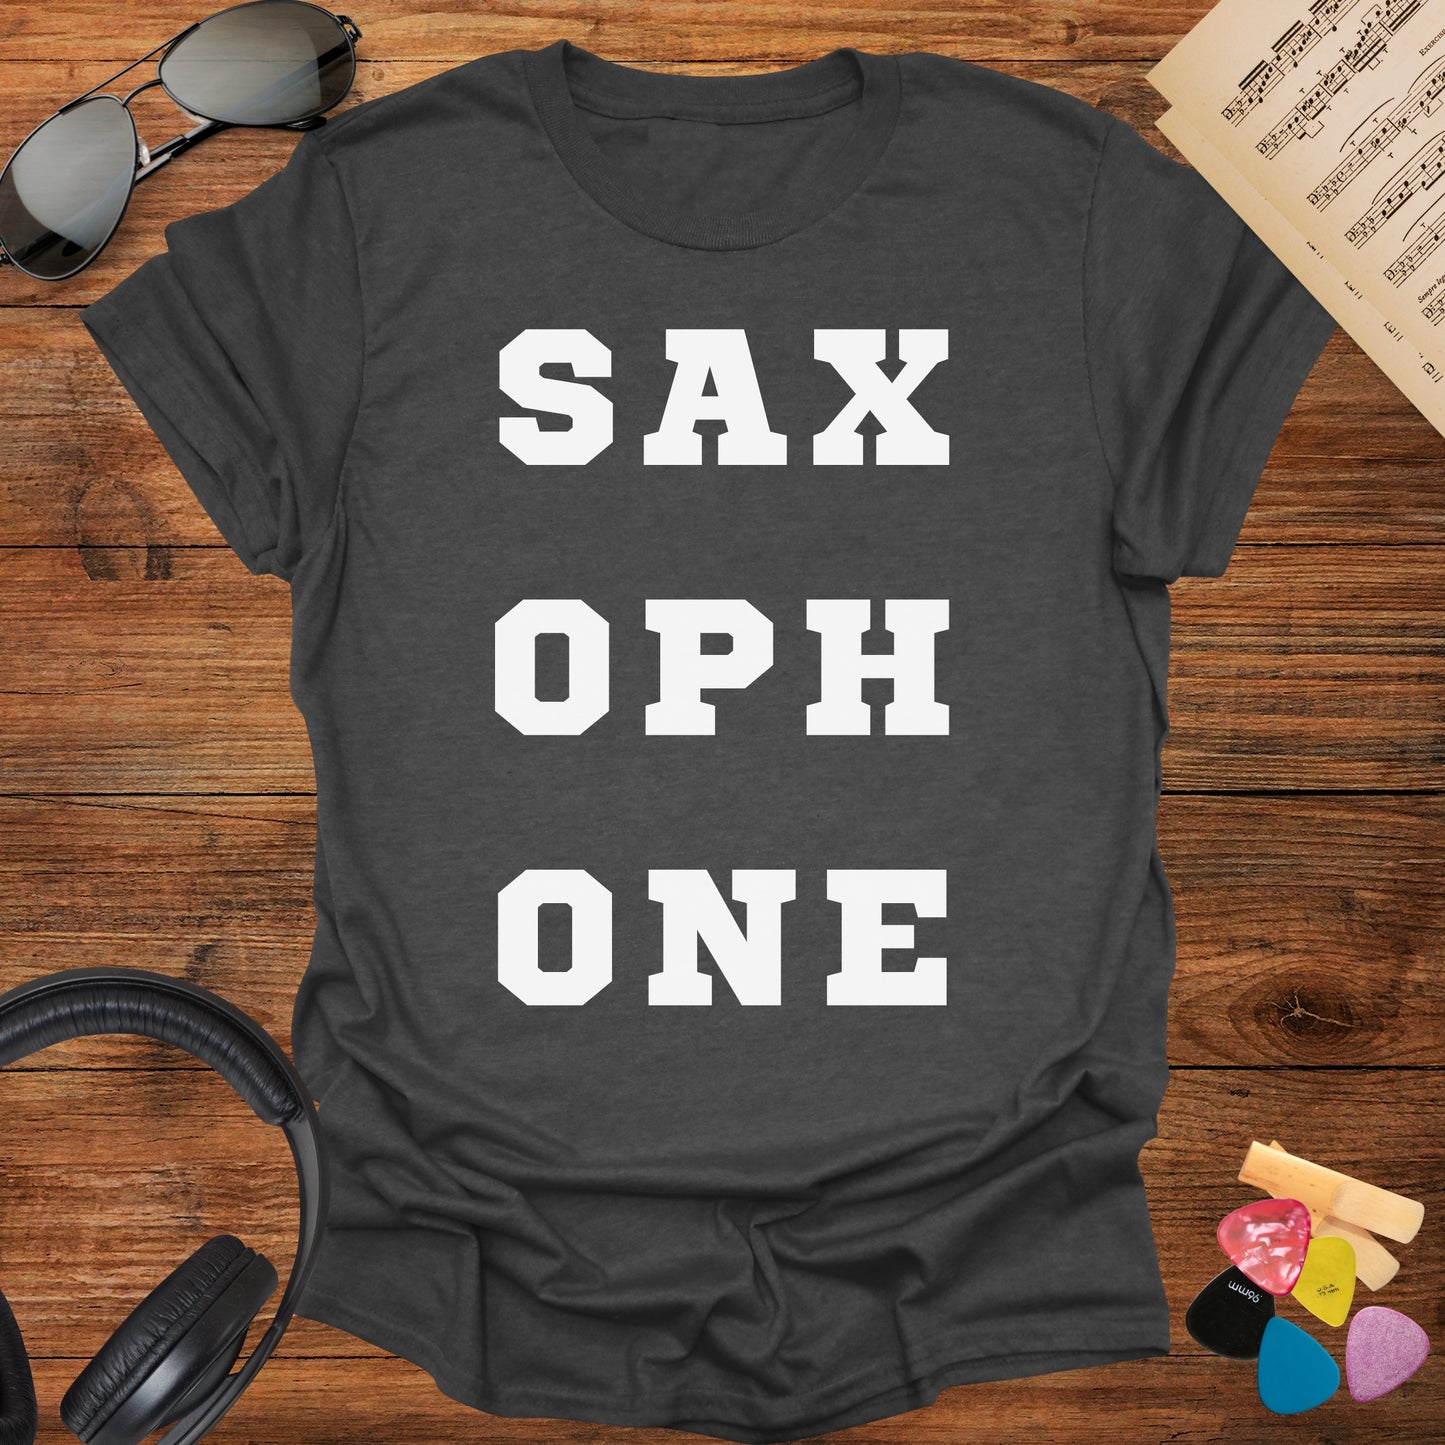 Sax-oph-one Tshirt